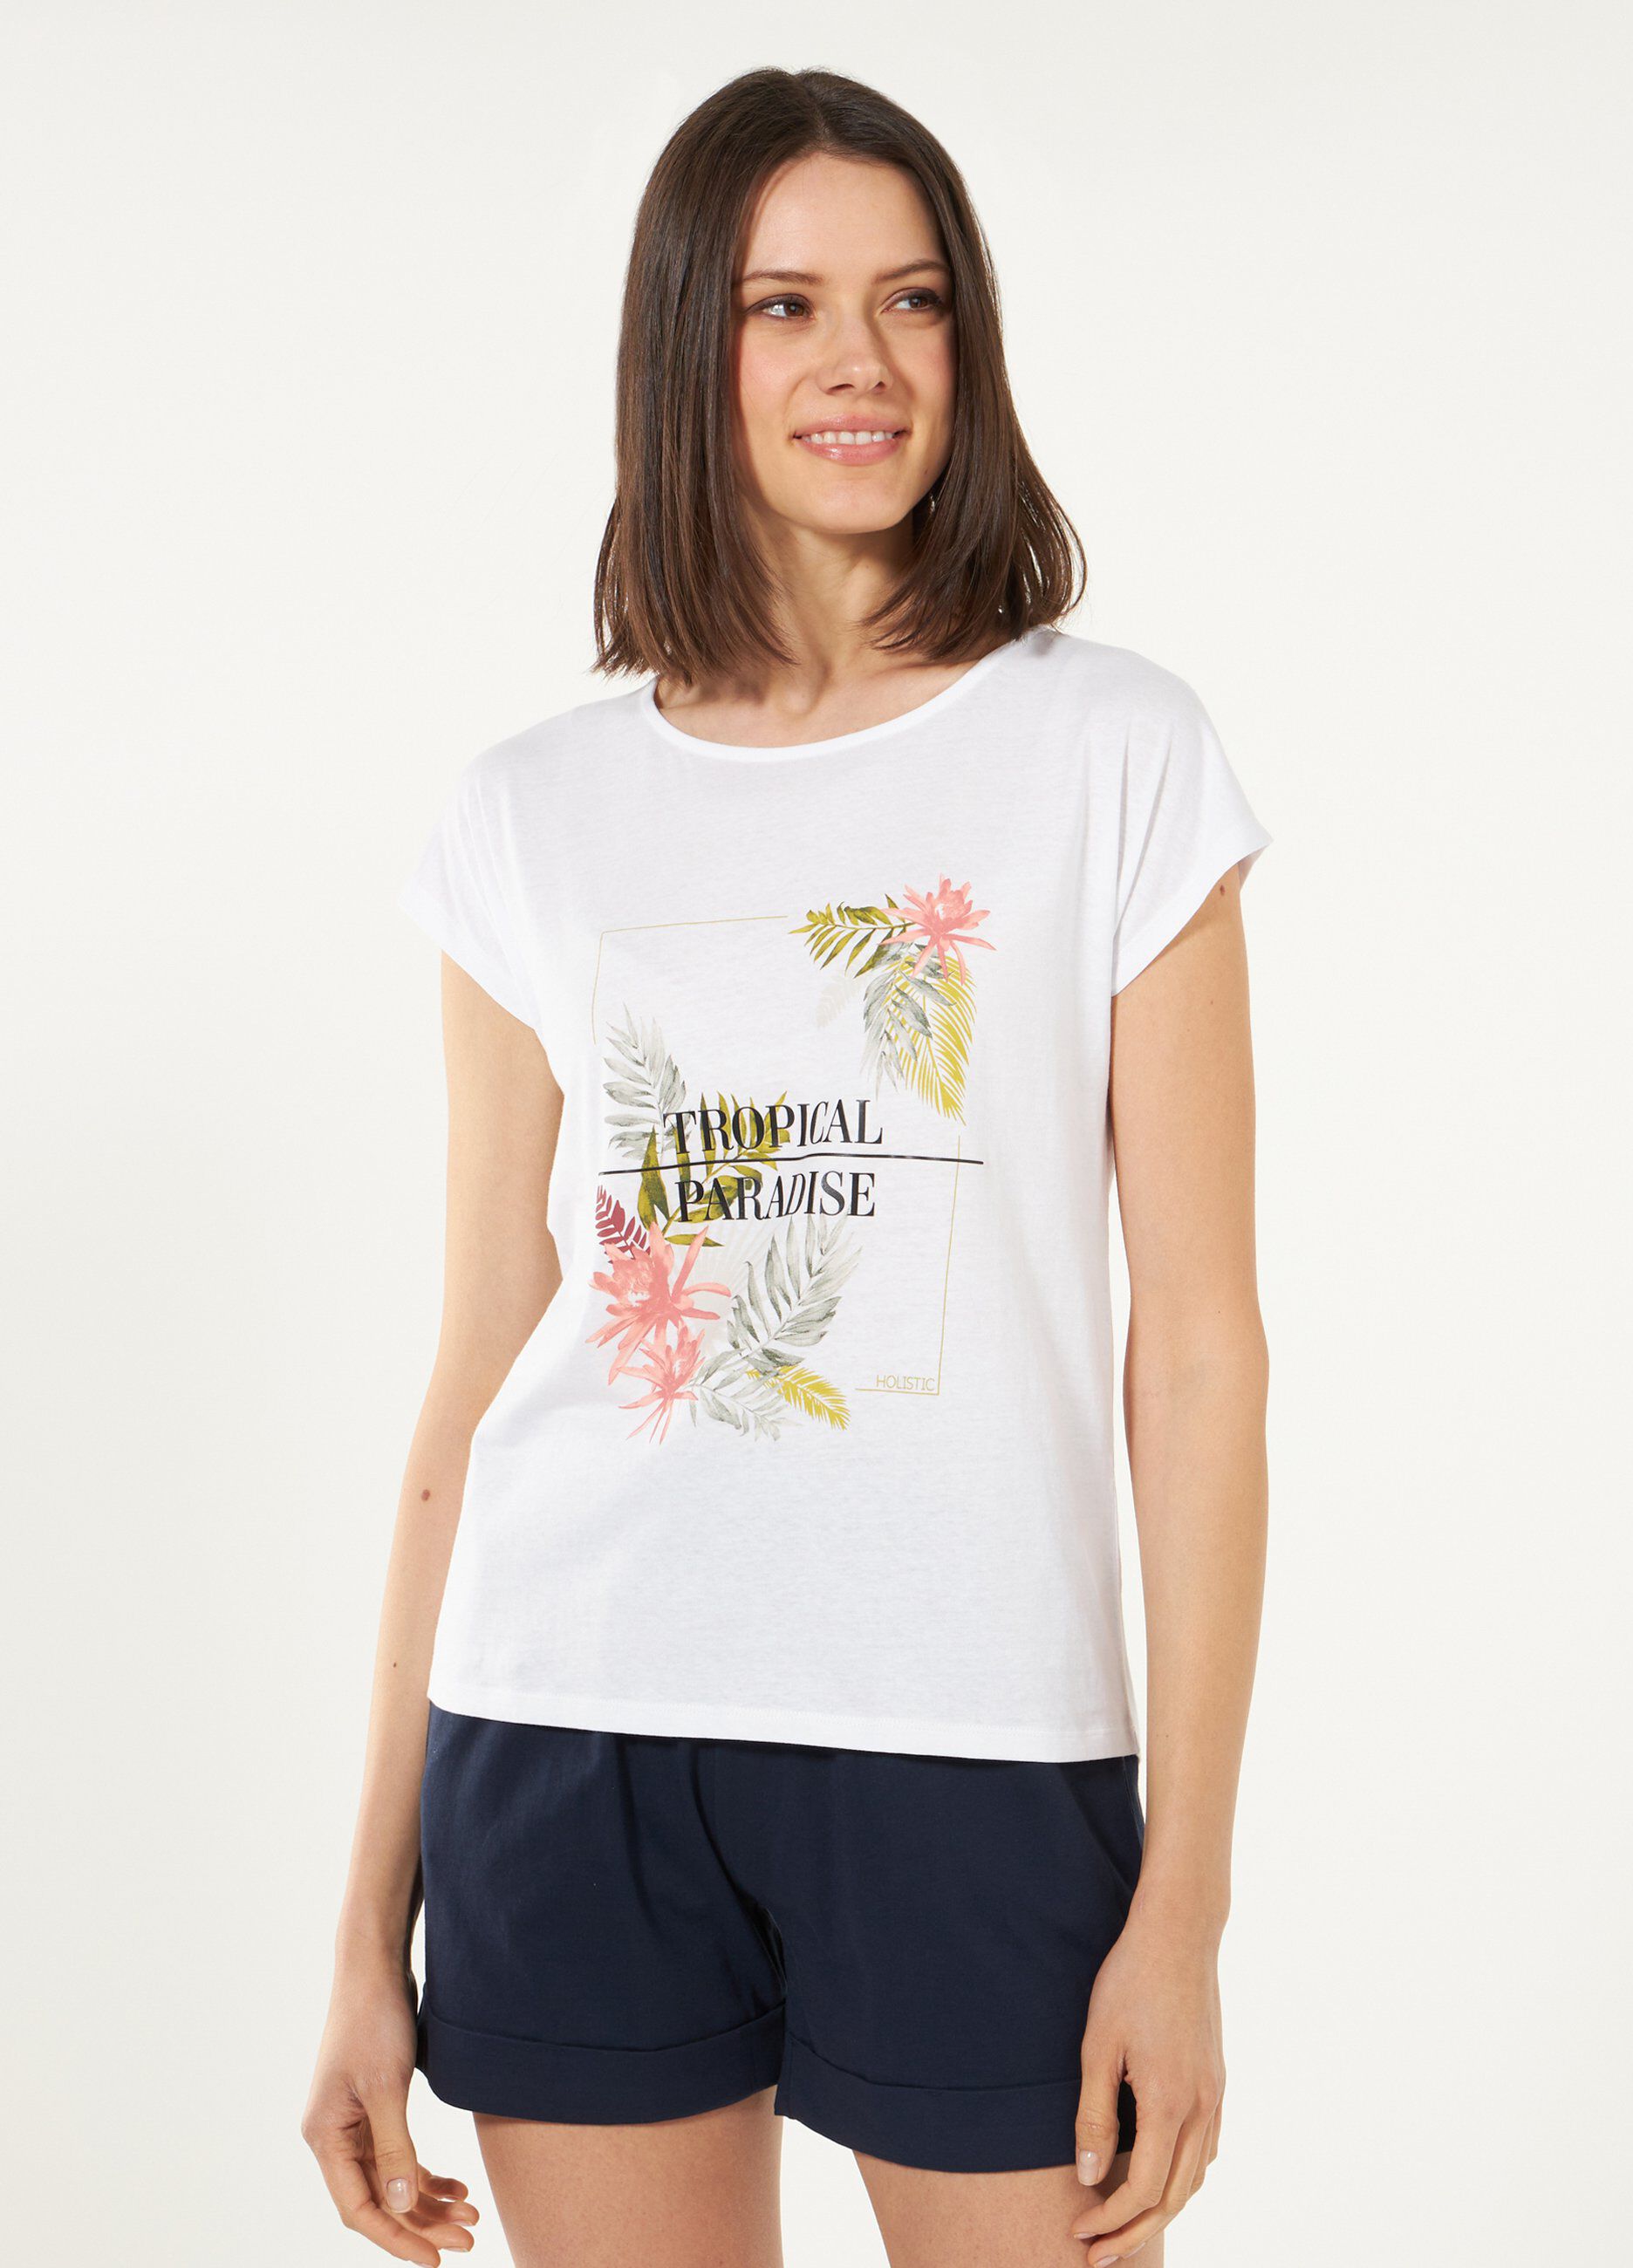 T-shirt Holistic in puro cotone con stampa donna_0